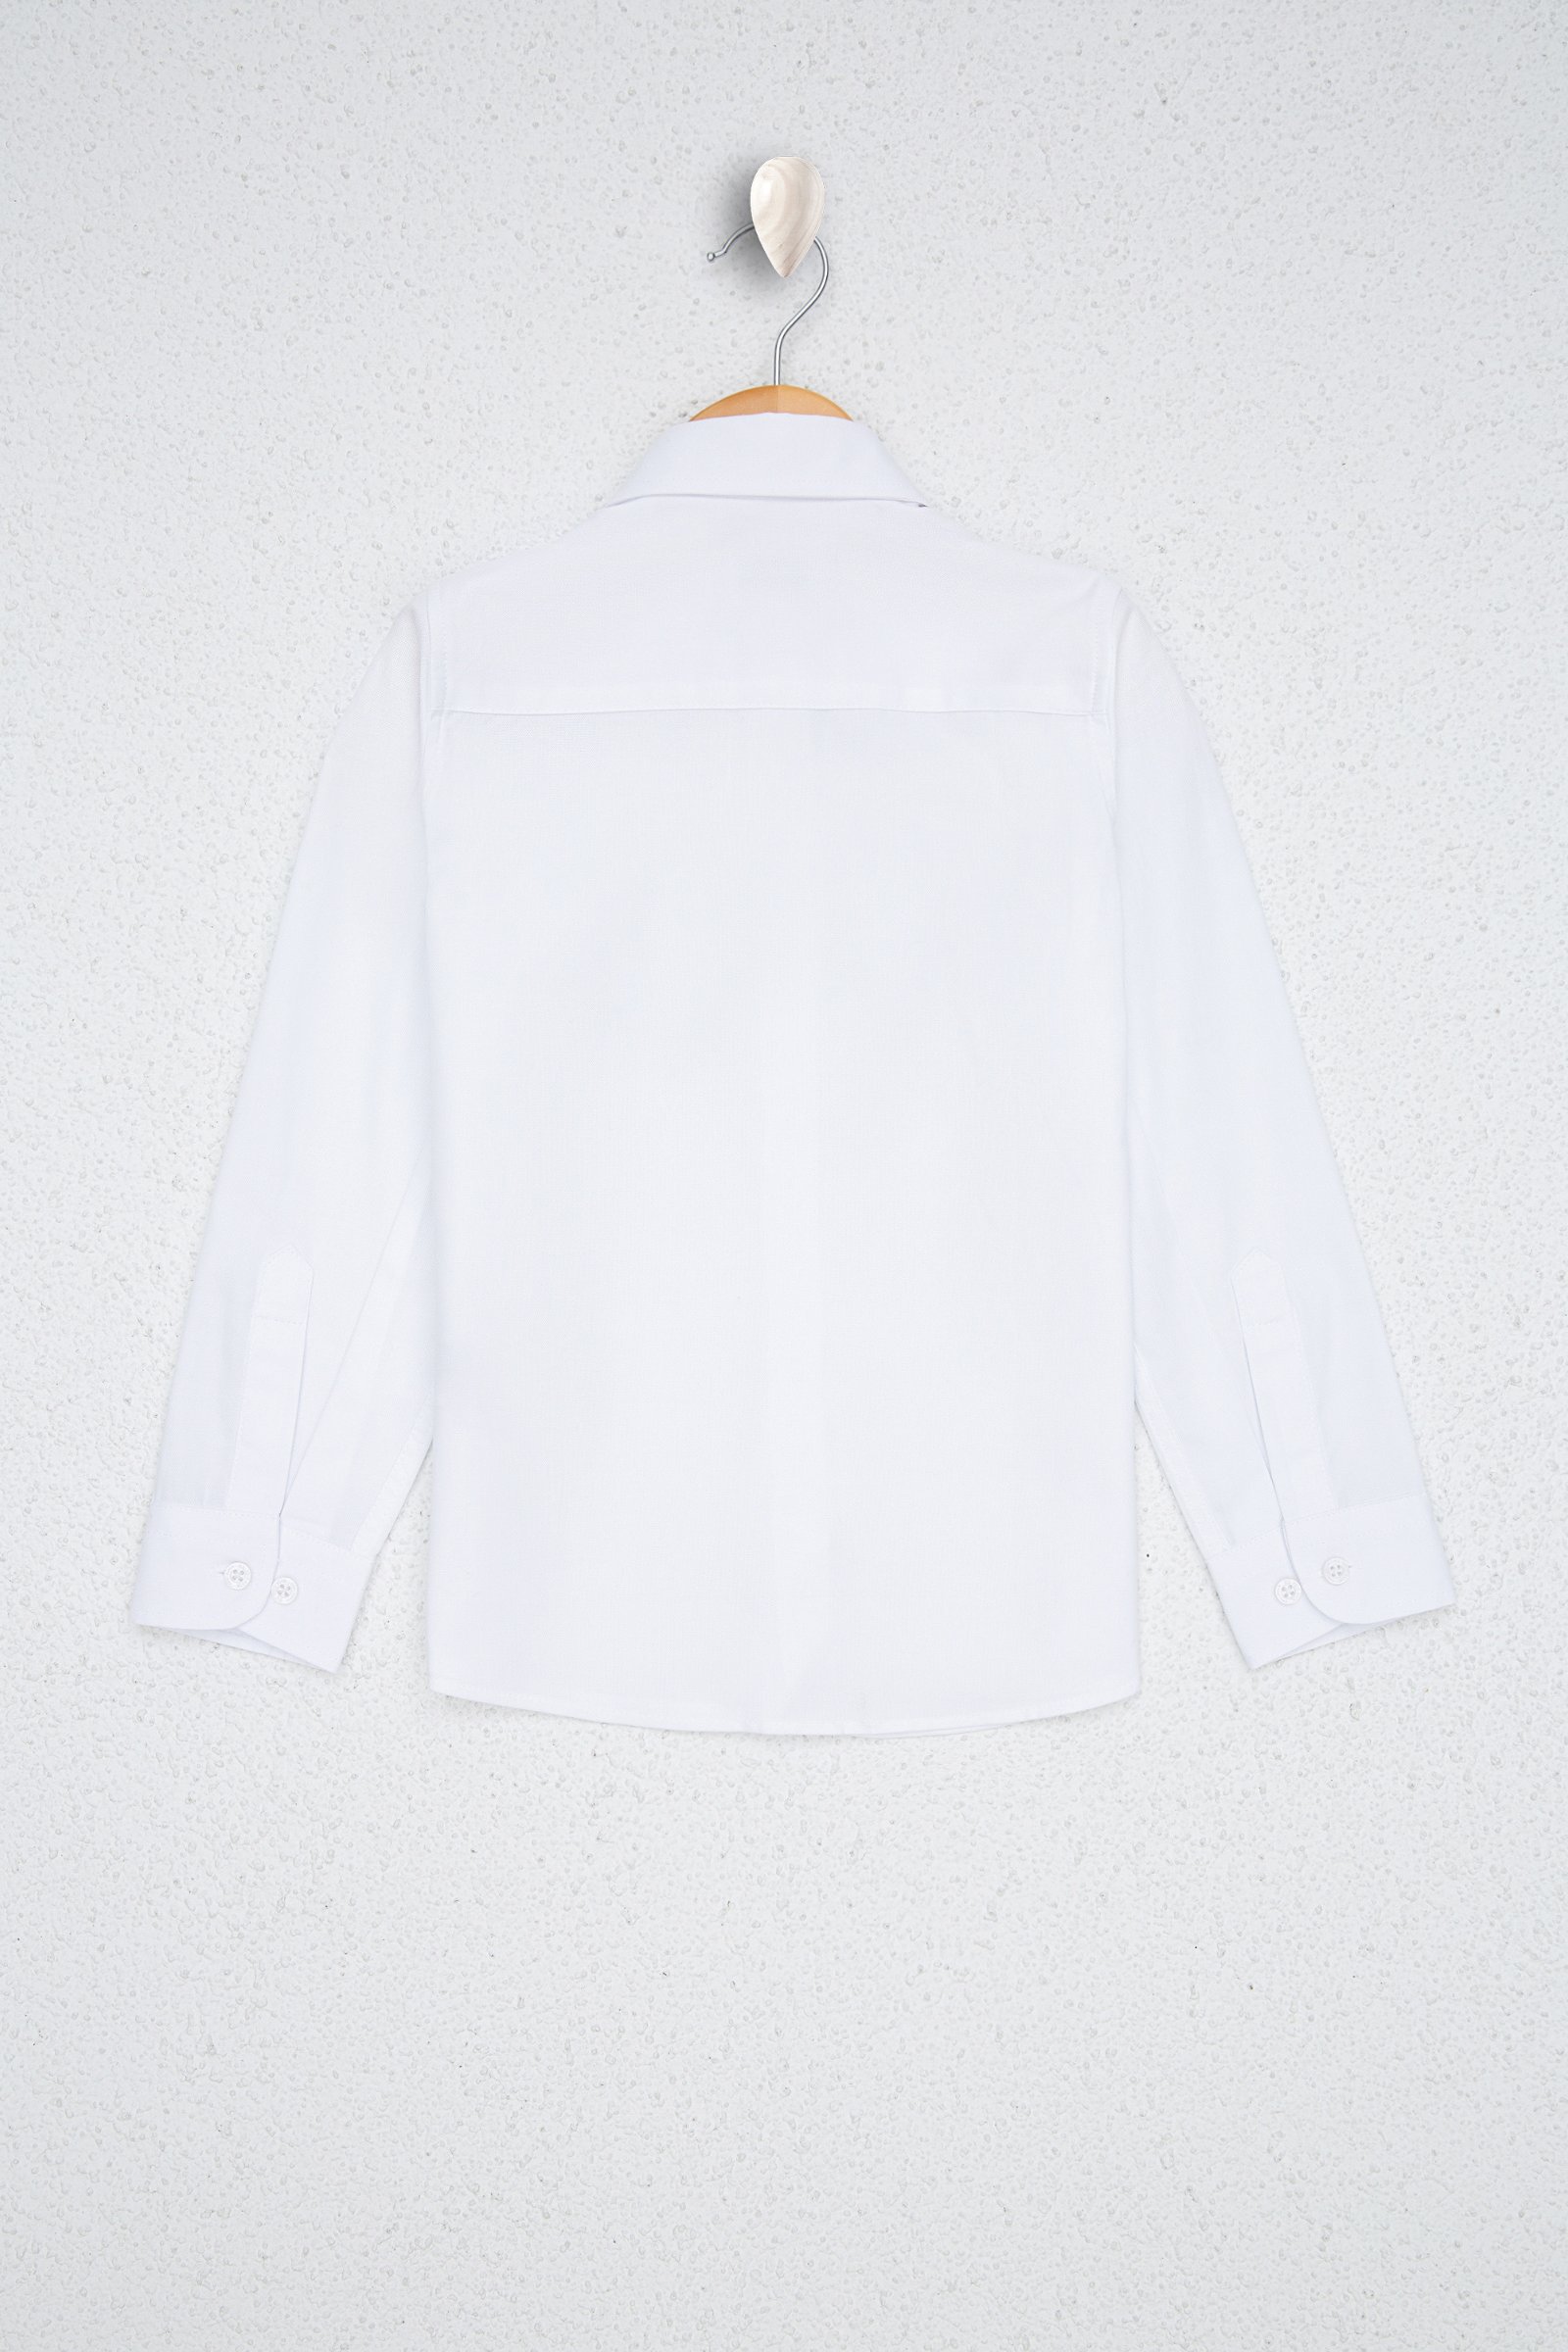 پیراهن  سفید  استاندارد فیت  دخترانه یو اس پولو | US POLO ASSN